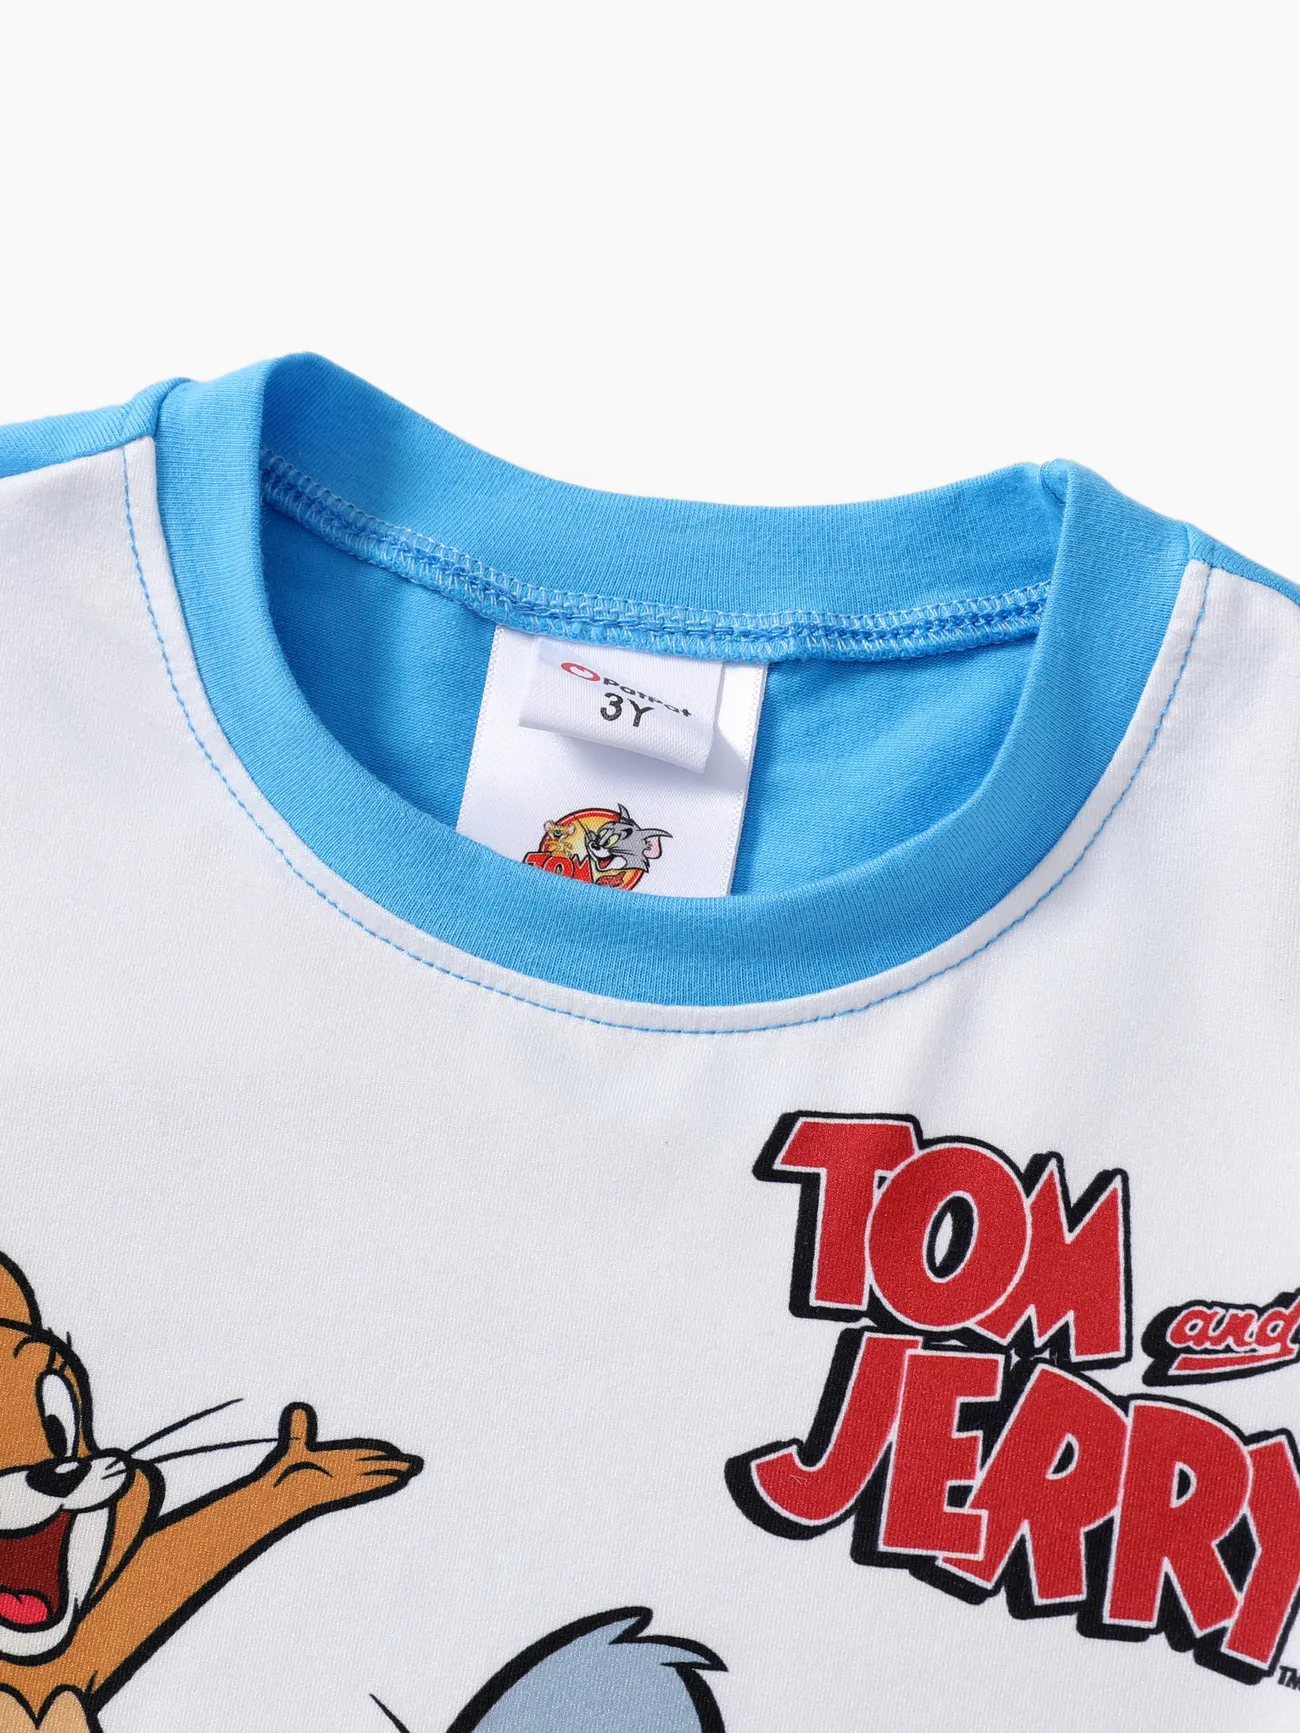 Tom and Jerry 2 unidades Niño pequeño Chico Infantil conjuntos de camiseta Azul big image 1